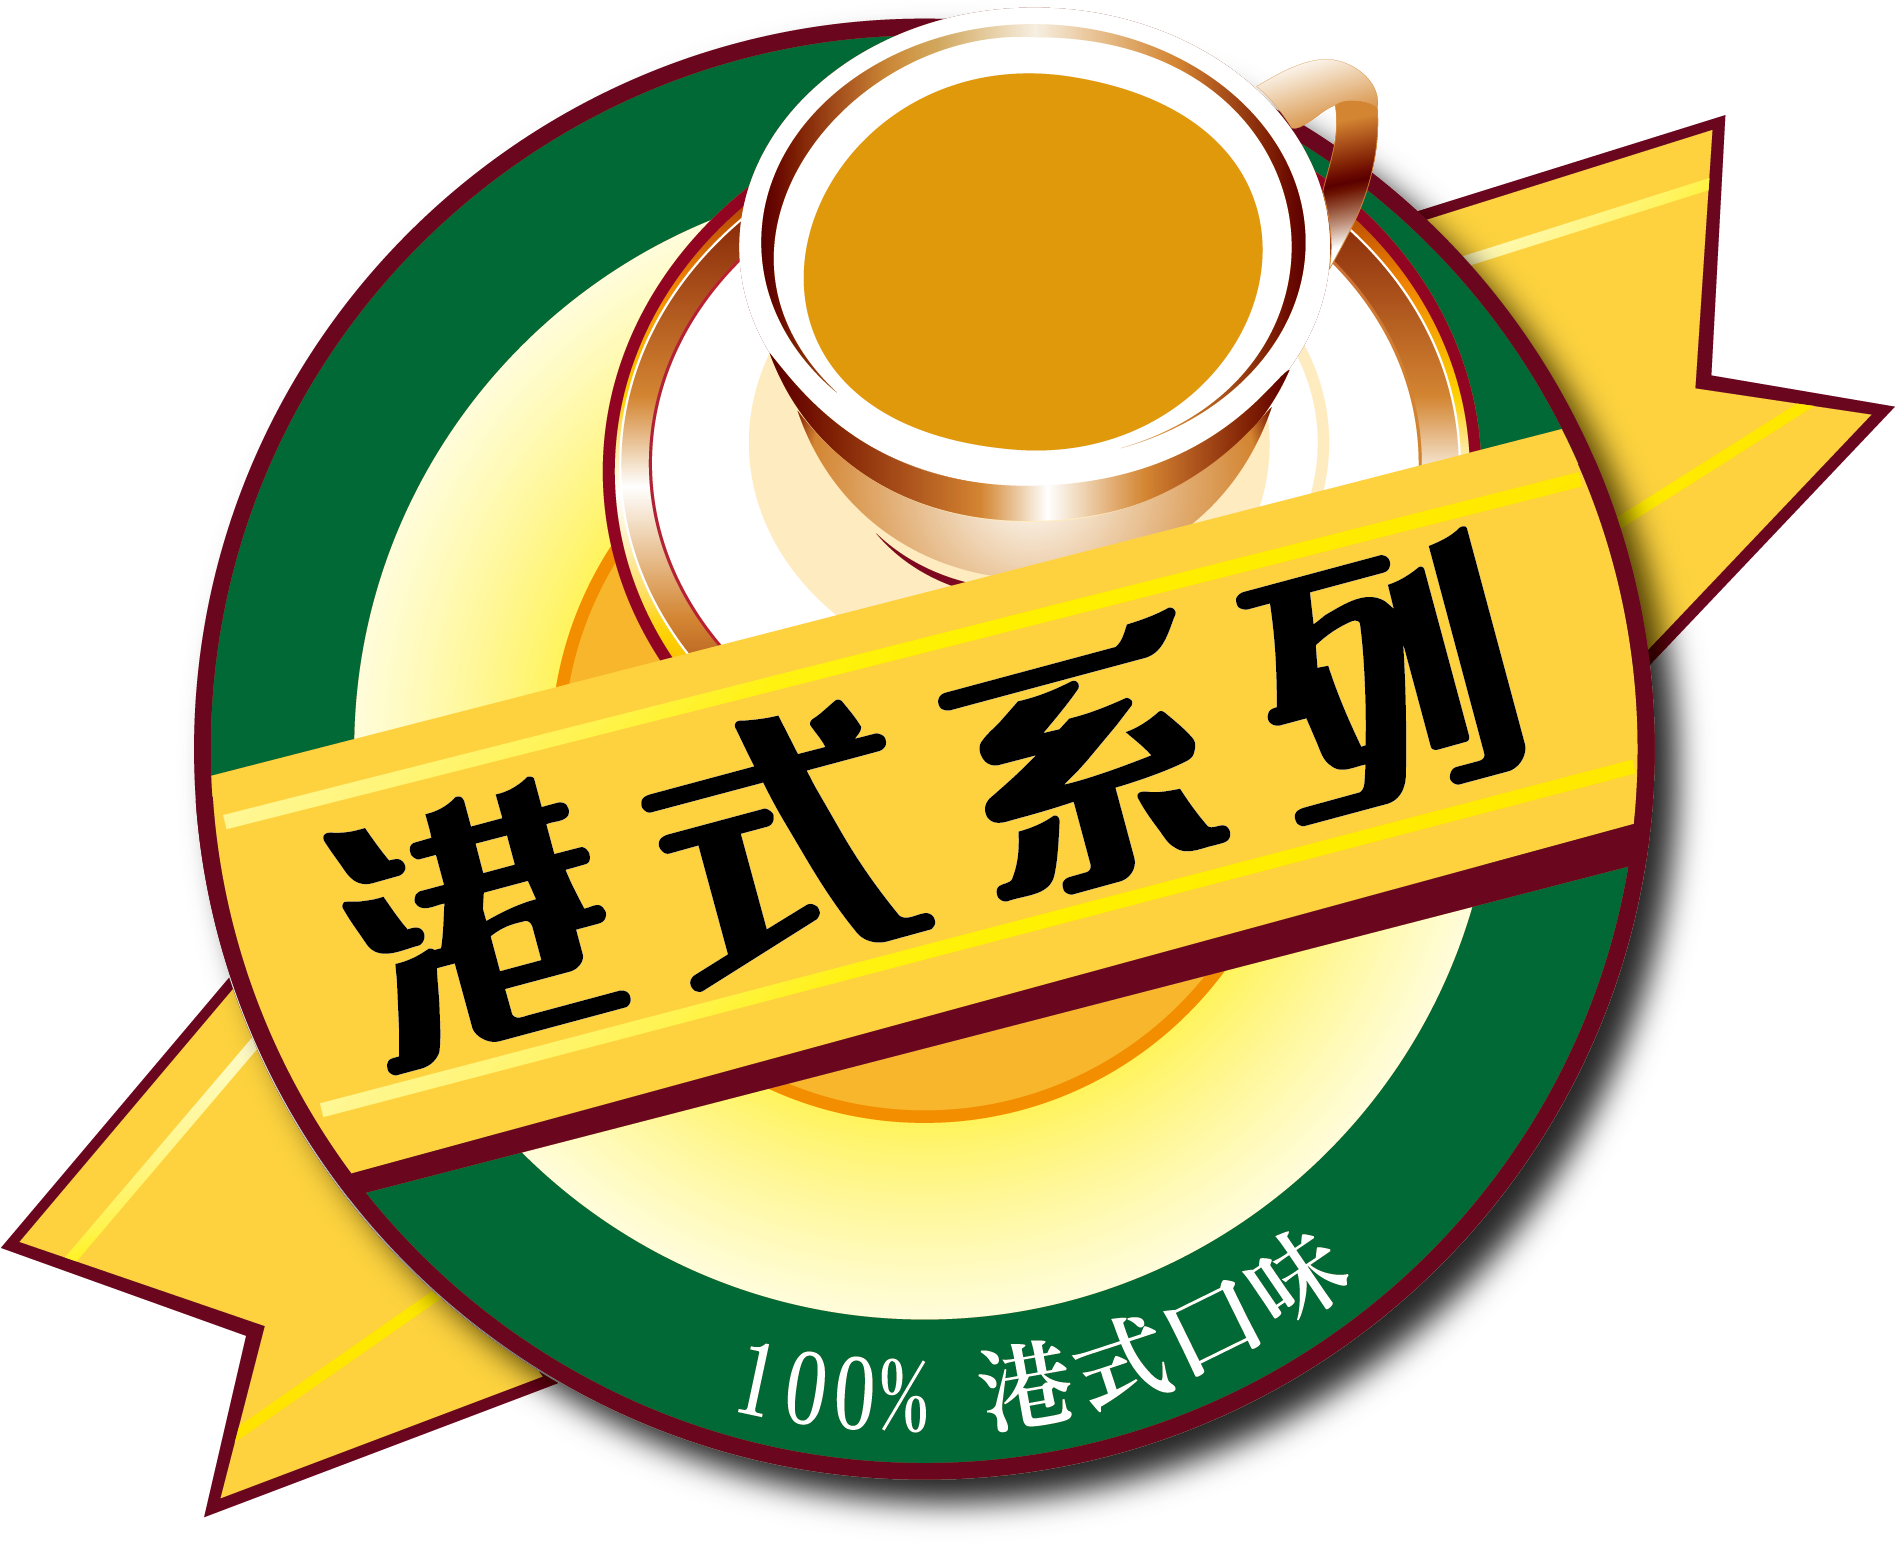 Hong Kong Style Mlk Tea Tea King Series - Hiang Kie (1894x1552)